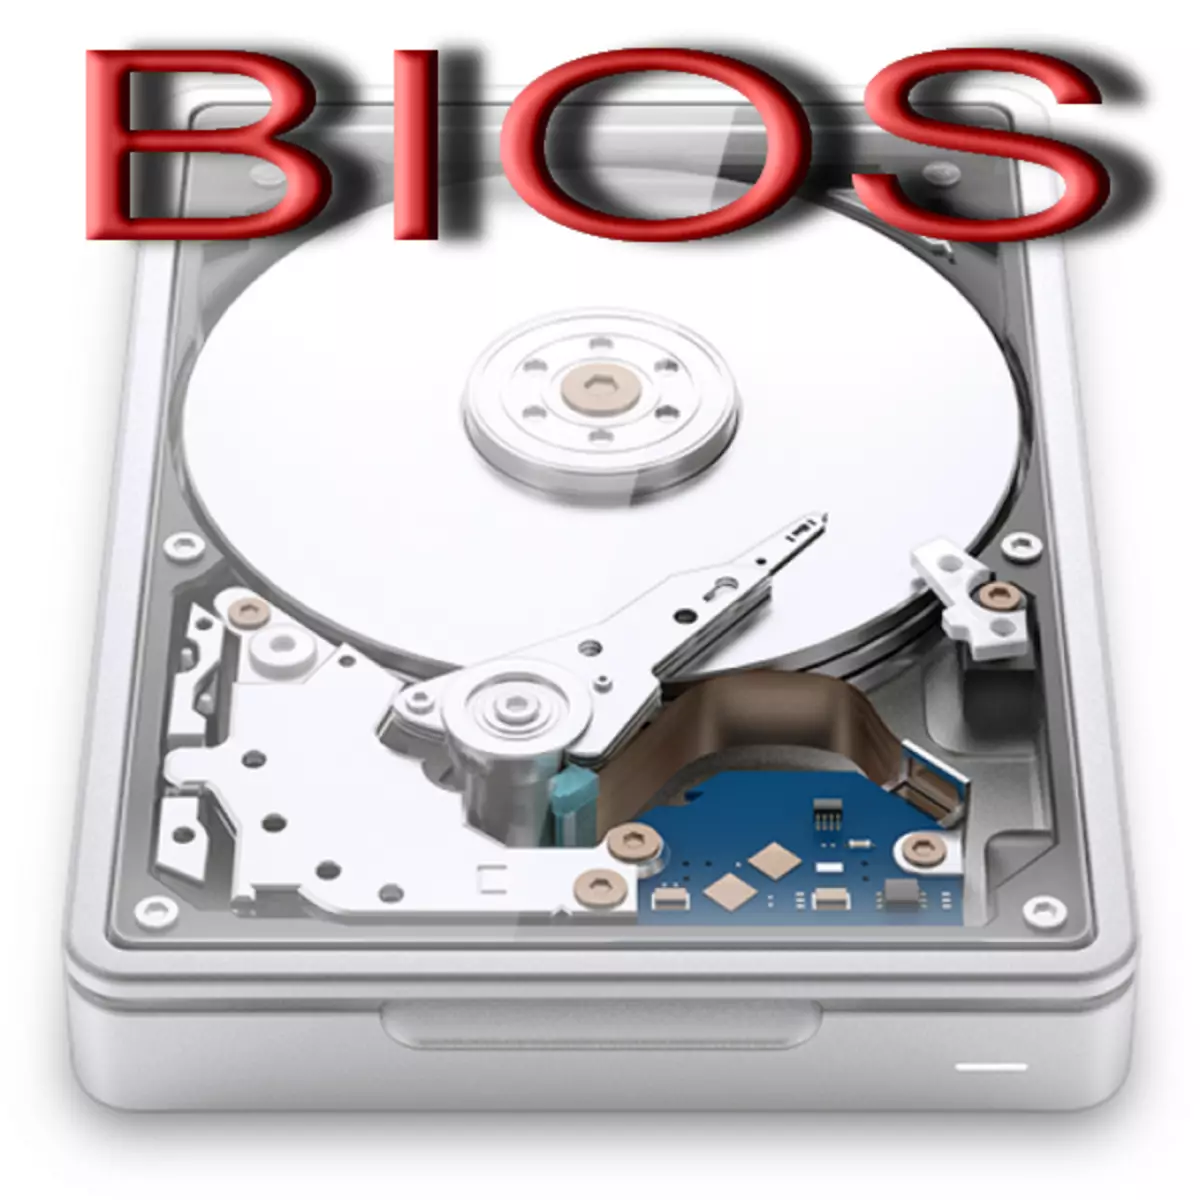 बायोस में हार्ड डिस्क को कैसे प्रारूपित करें